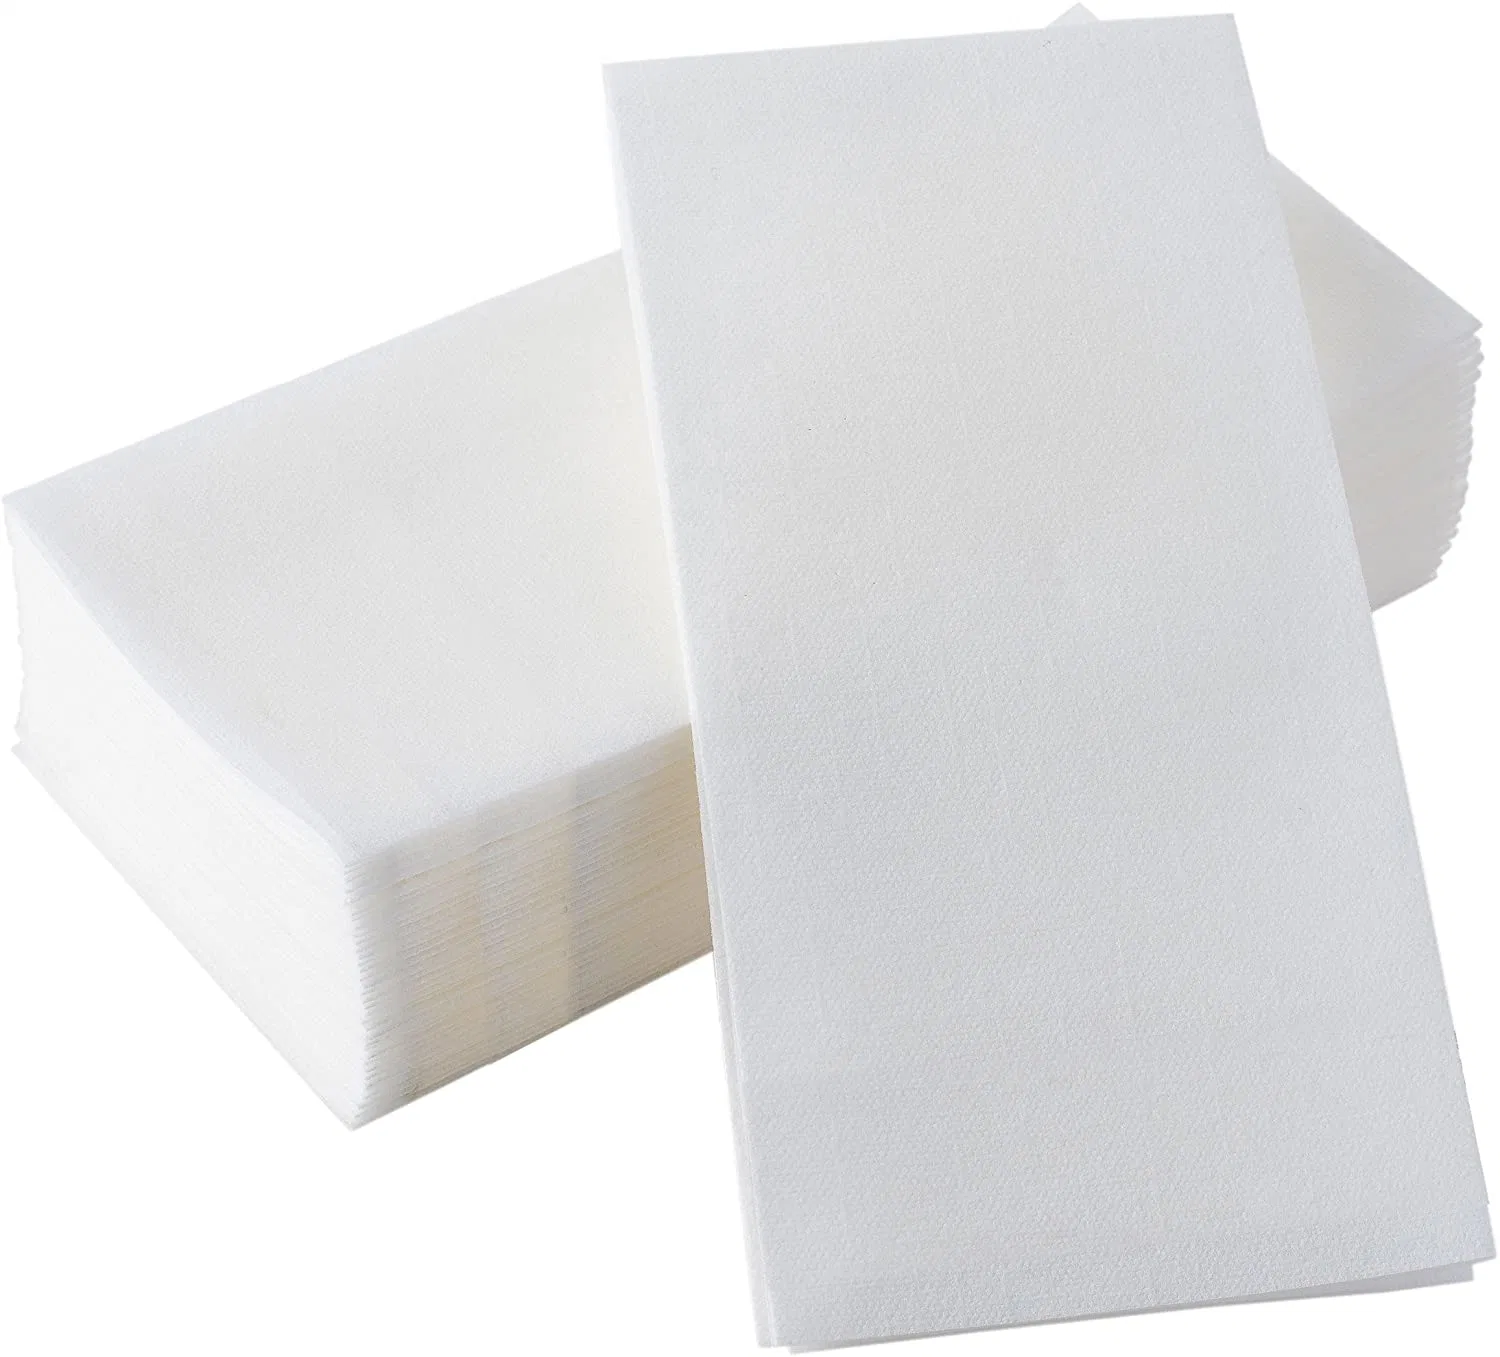 Serviettes en papier tissu à usage unique pour le dîner du papier d'enrubannage de la RSE Poly 24X24" et serviettes 17X19" pour des raisons médicales